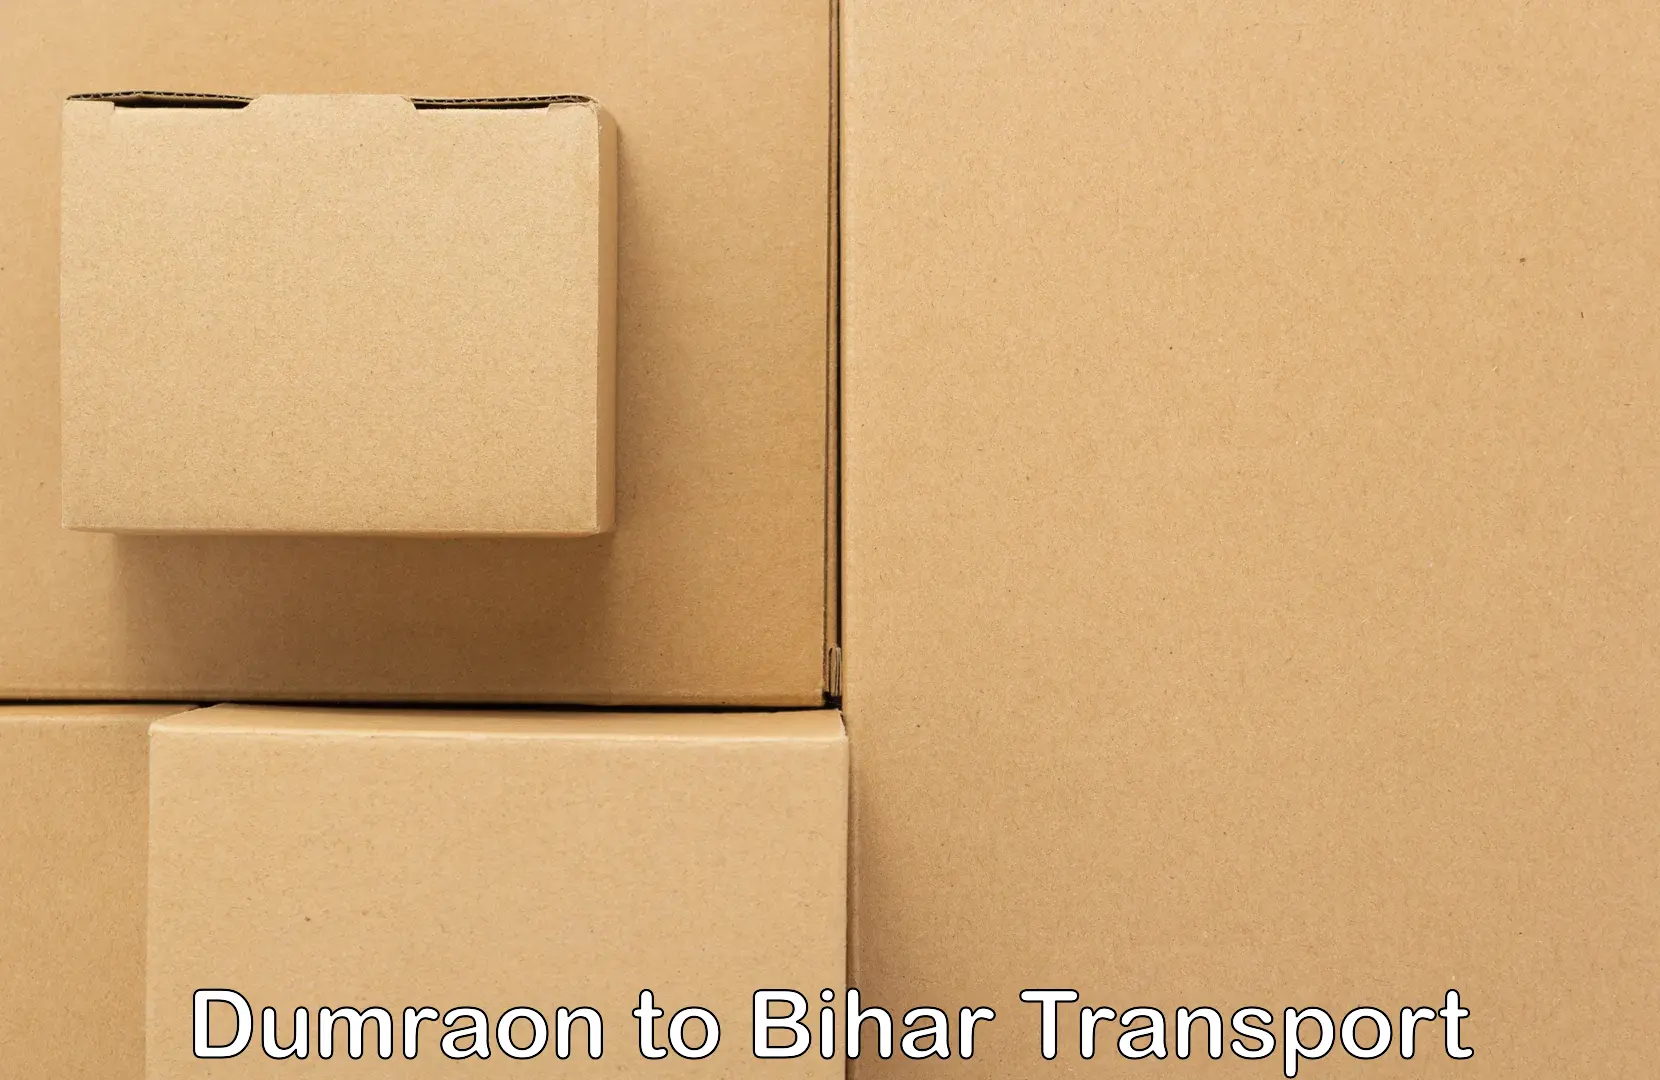 Pick up transport service Dumraon to Jhajha